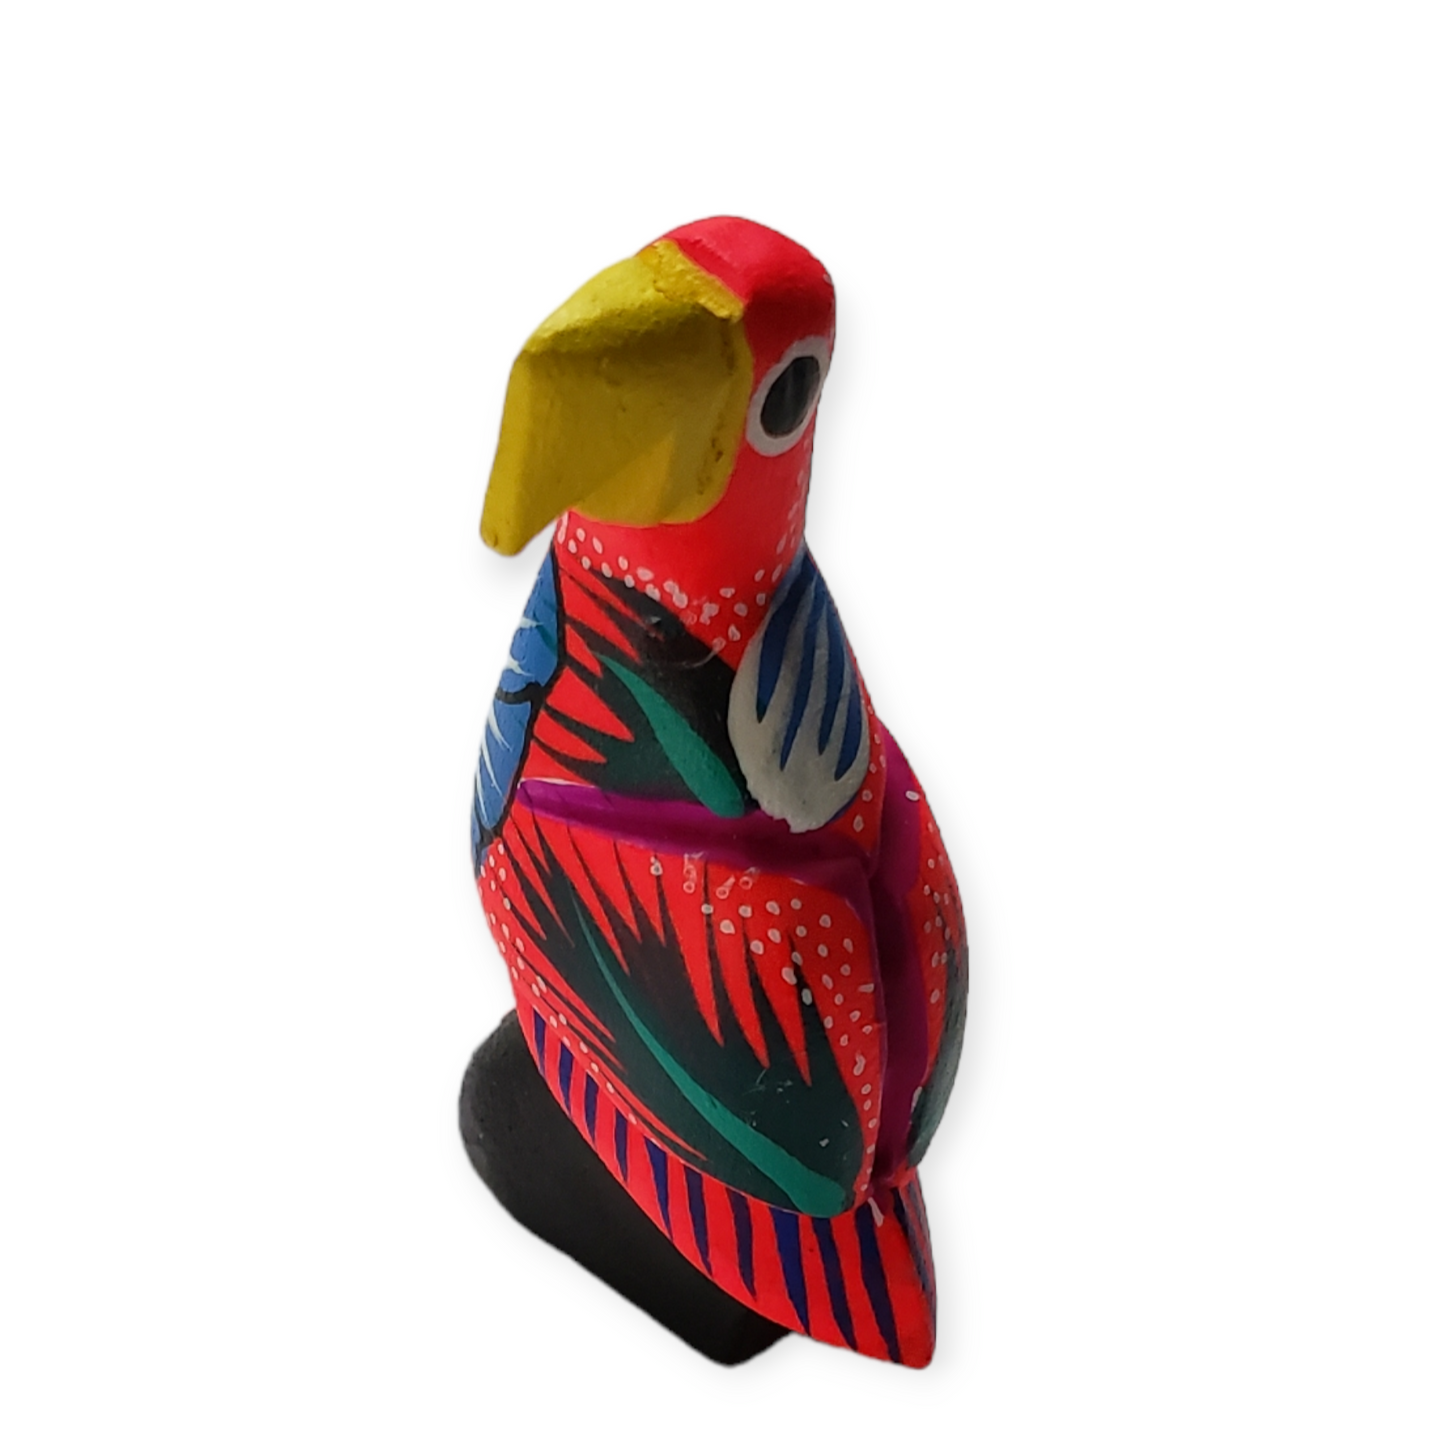 Parrot Bird Alebrije from Oaxaca